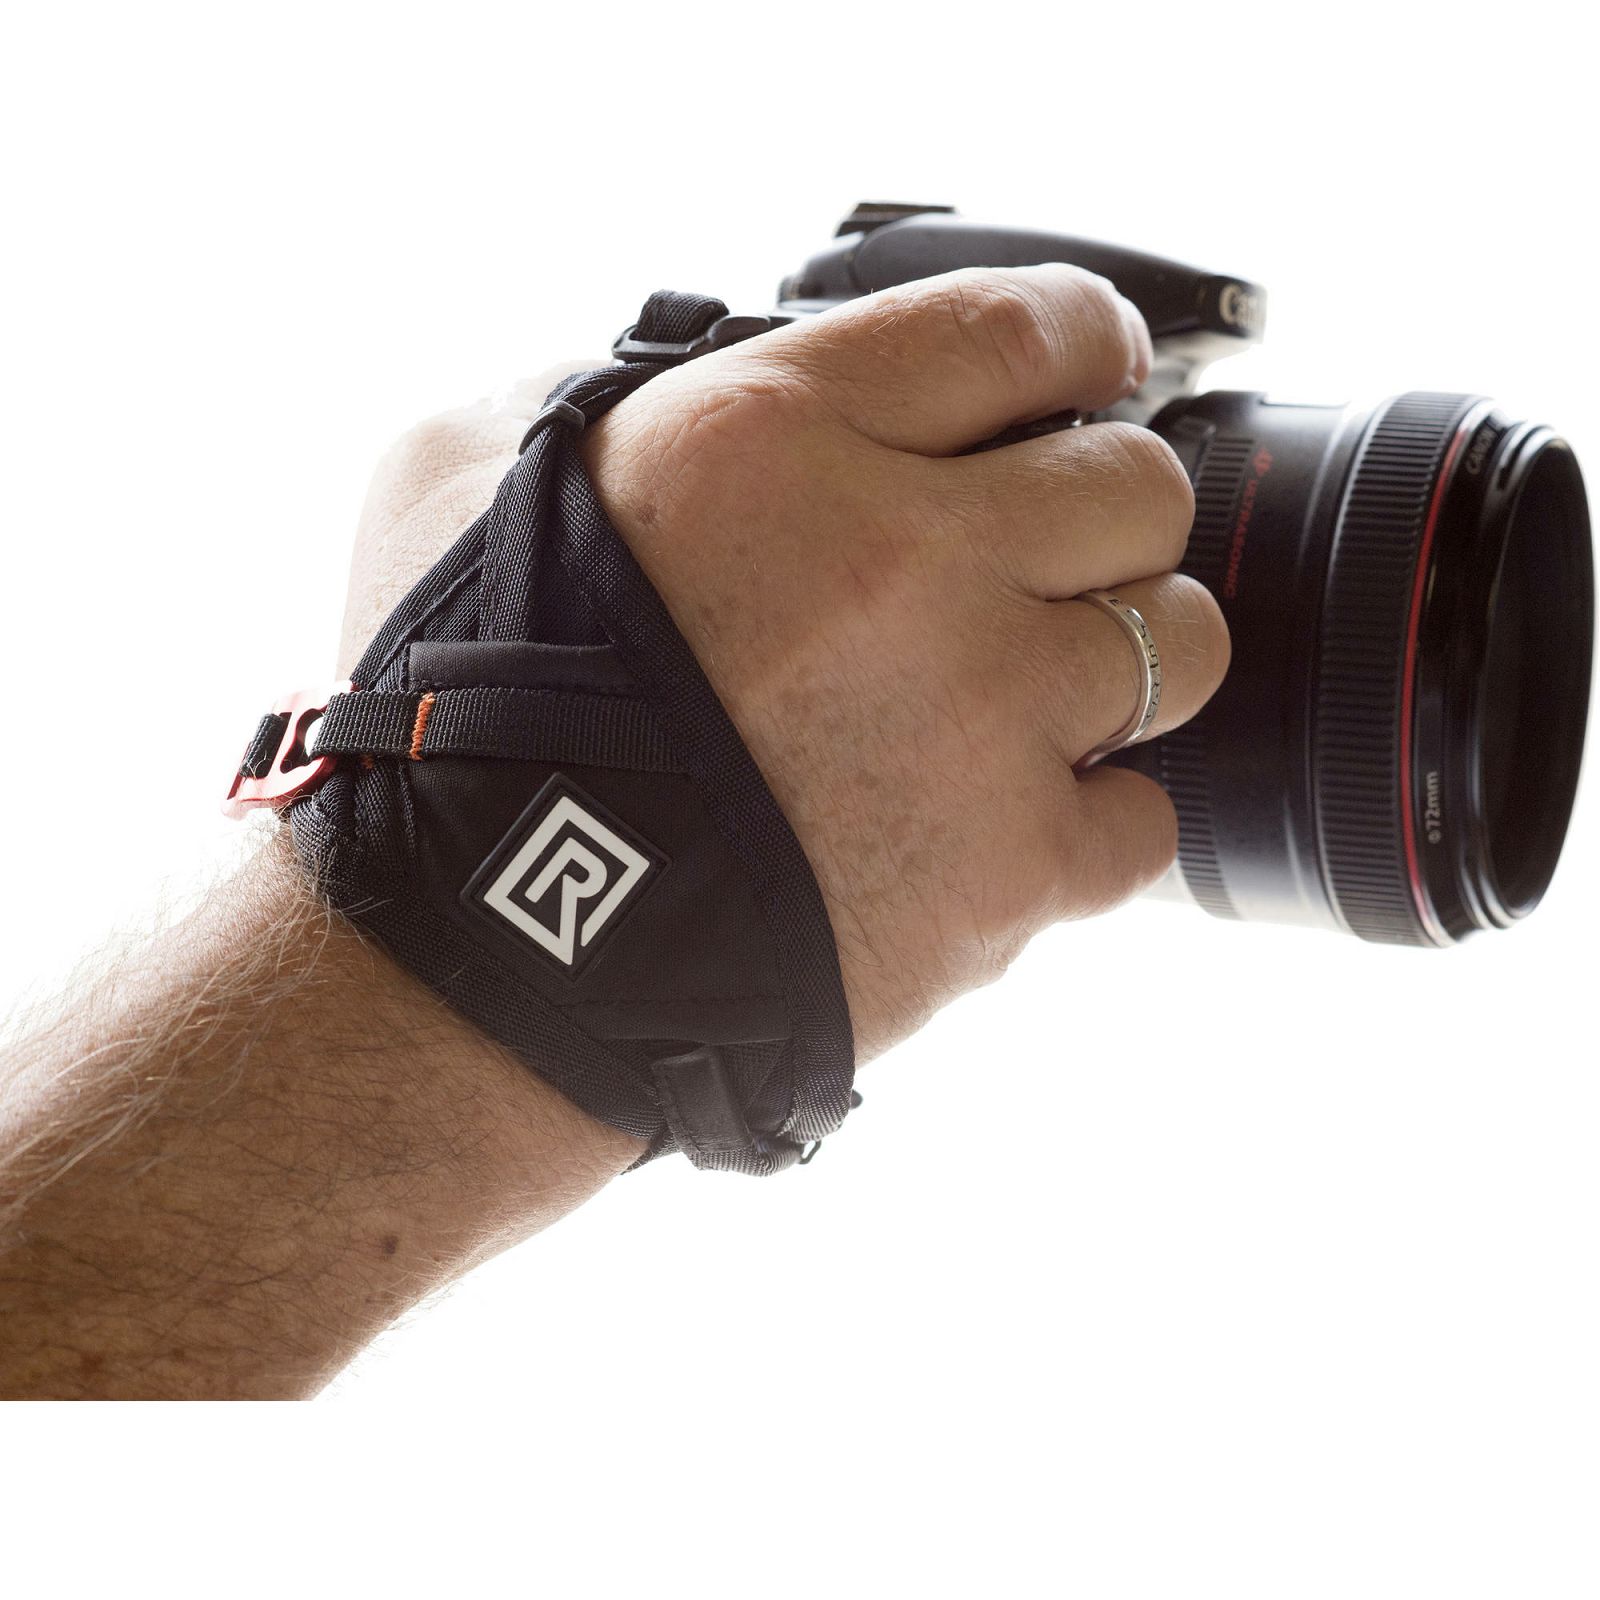 BlackRapid Hand Strap Breathe Camera Grip Strap zahvatnjak ručni držač za fotoaparat (362003)